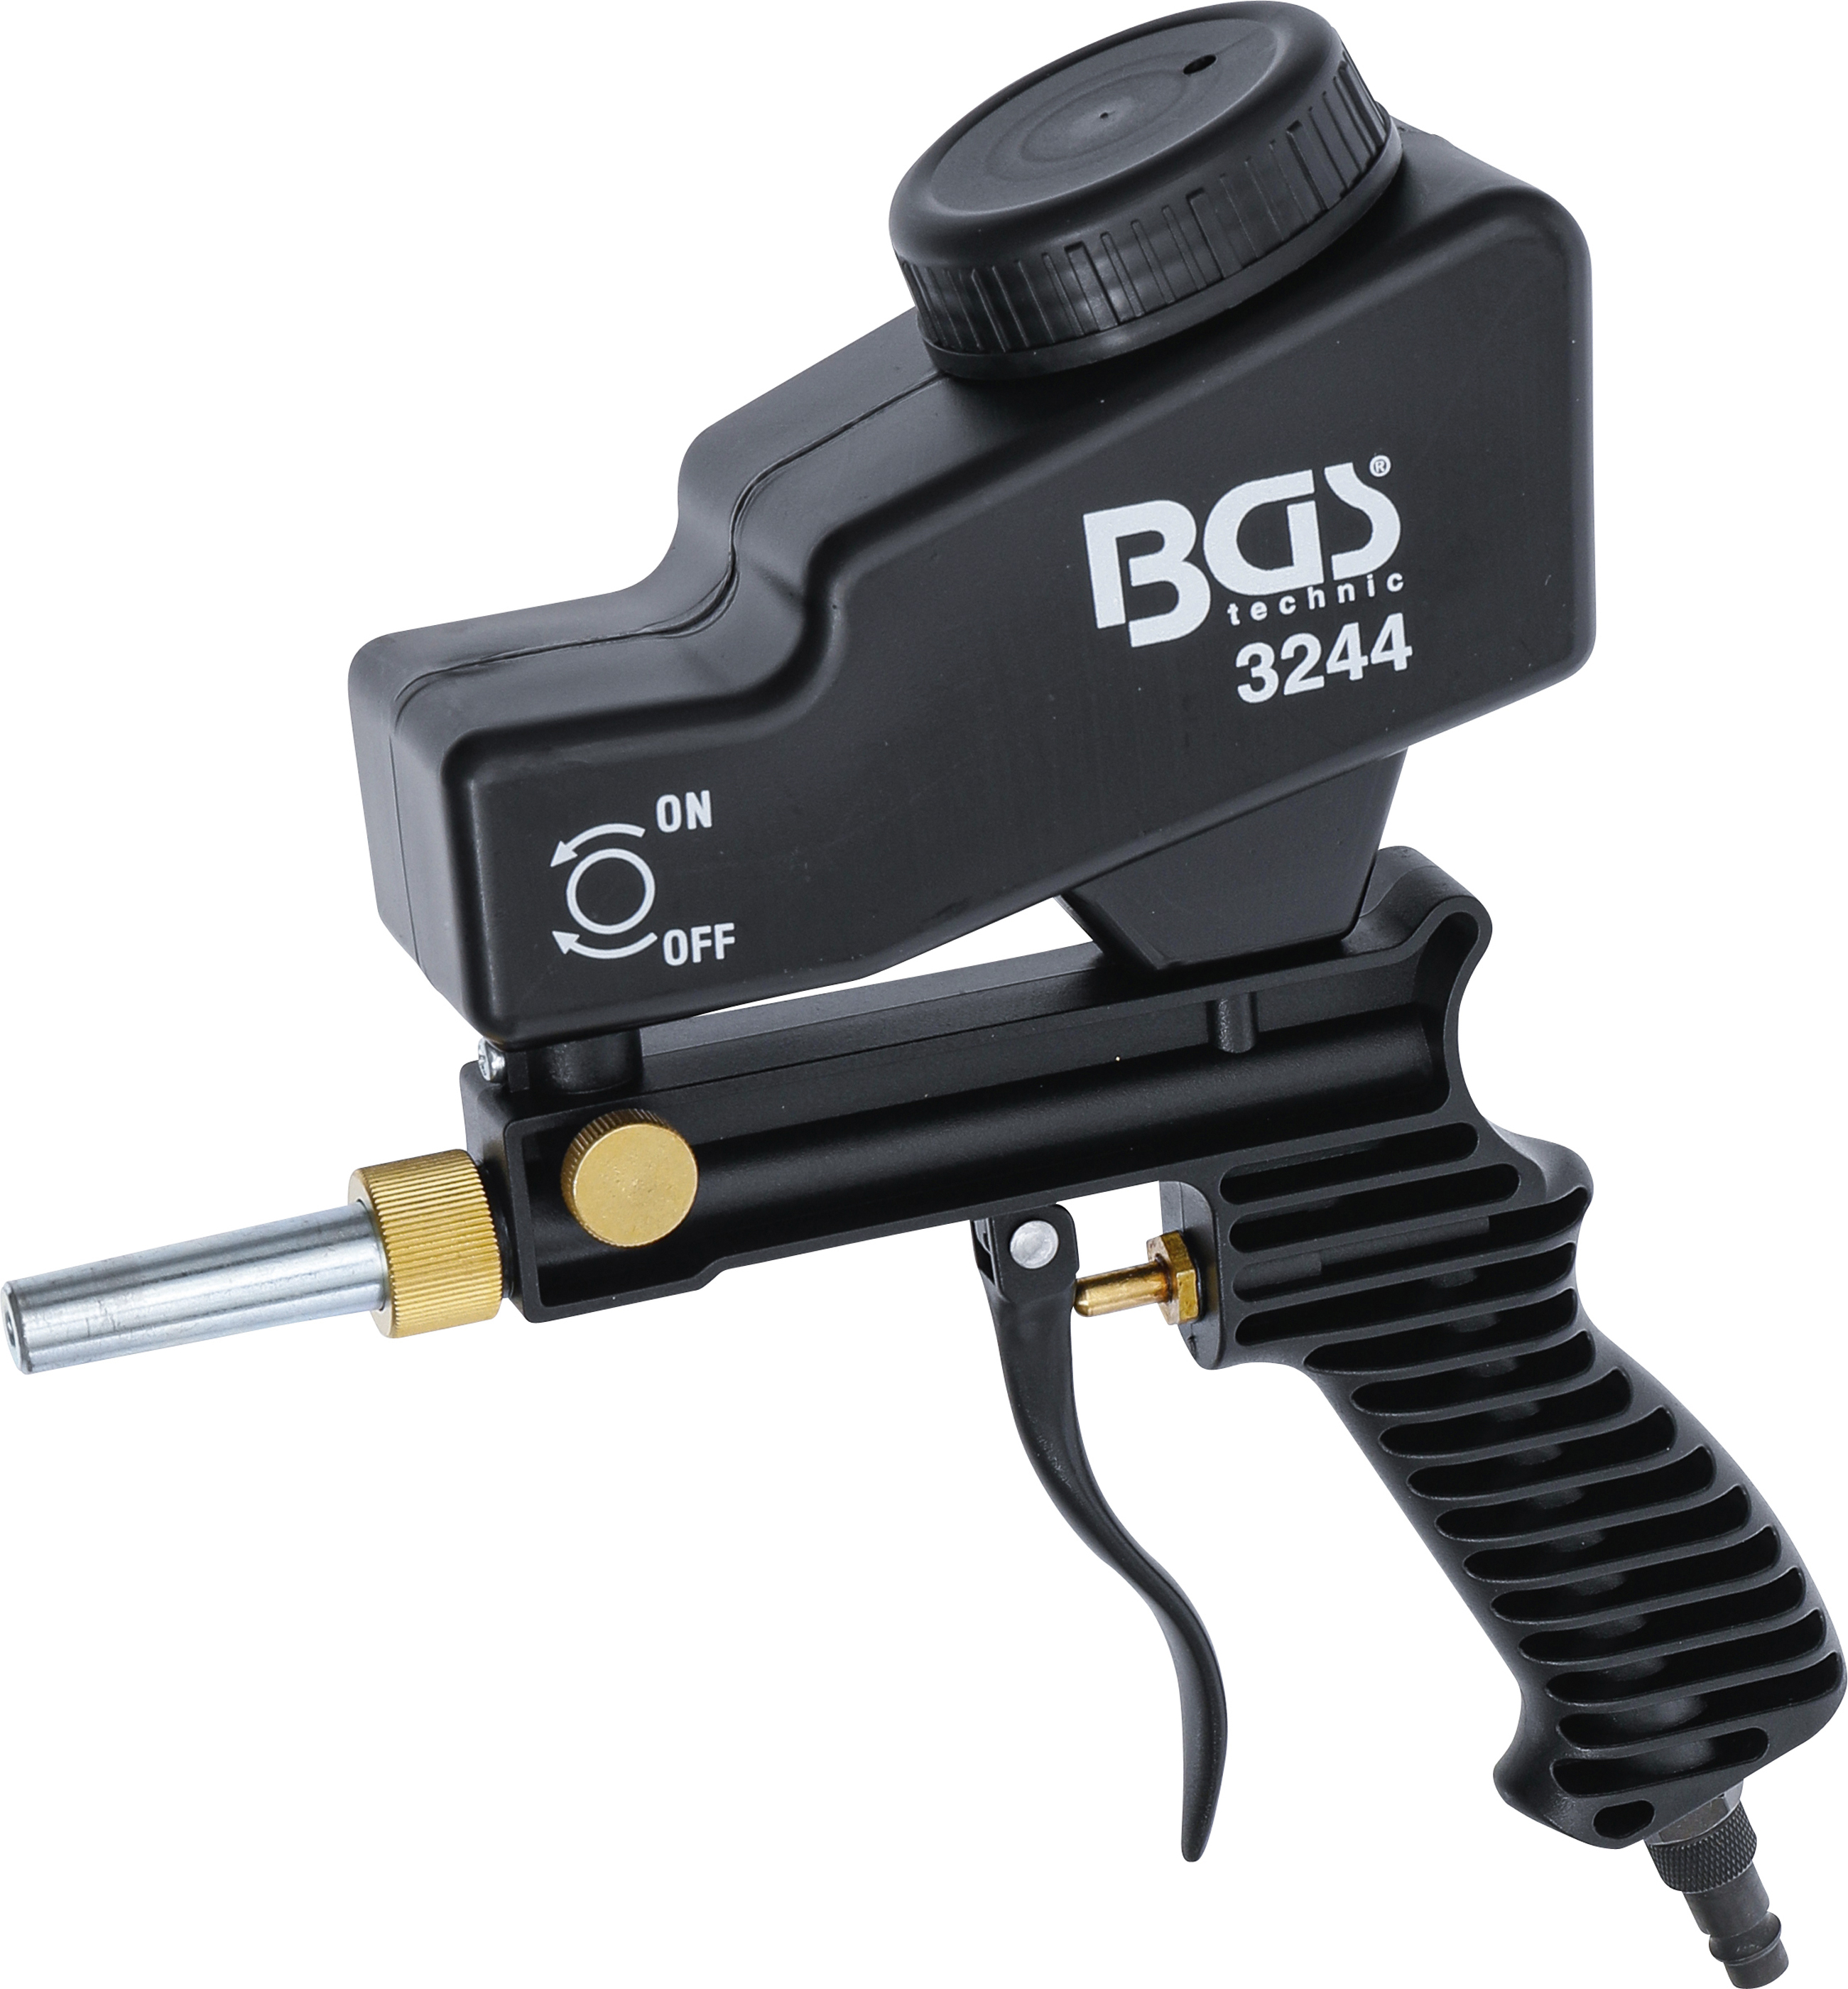 BGS Druckluft-Sandstrahlpistole